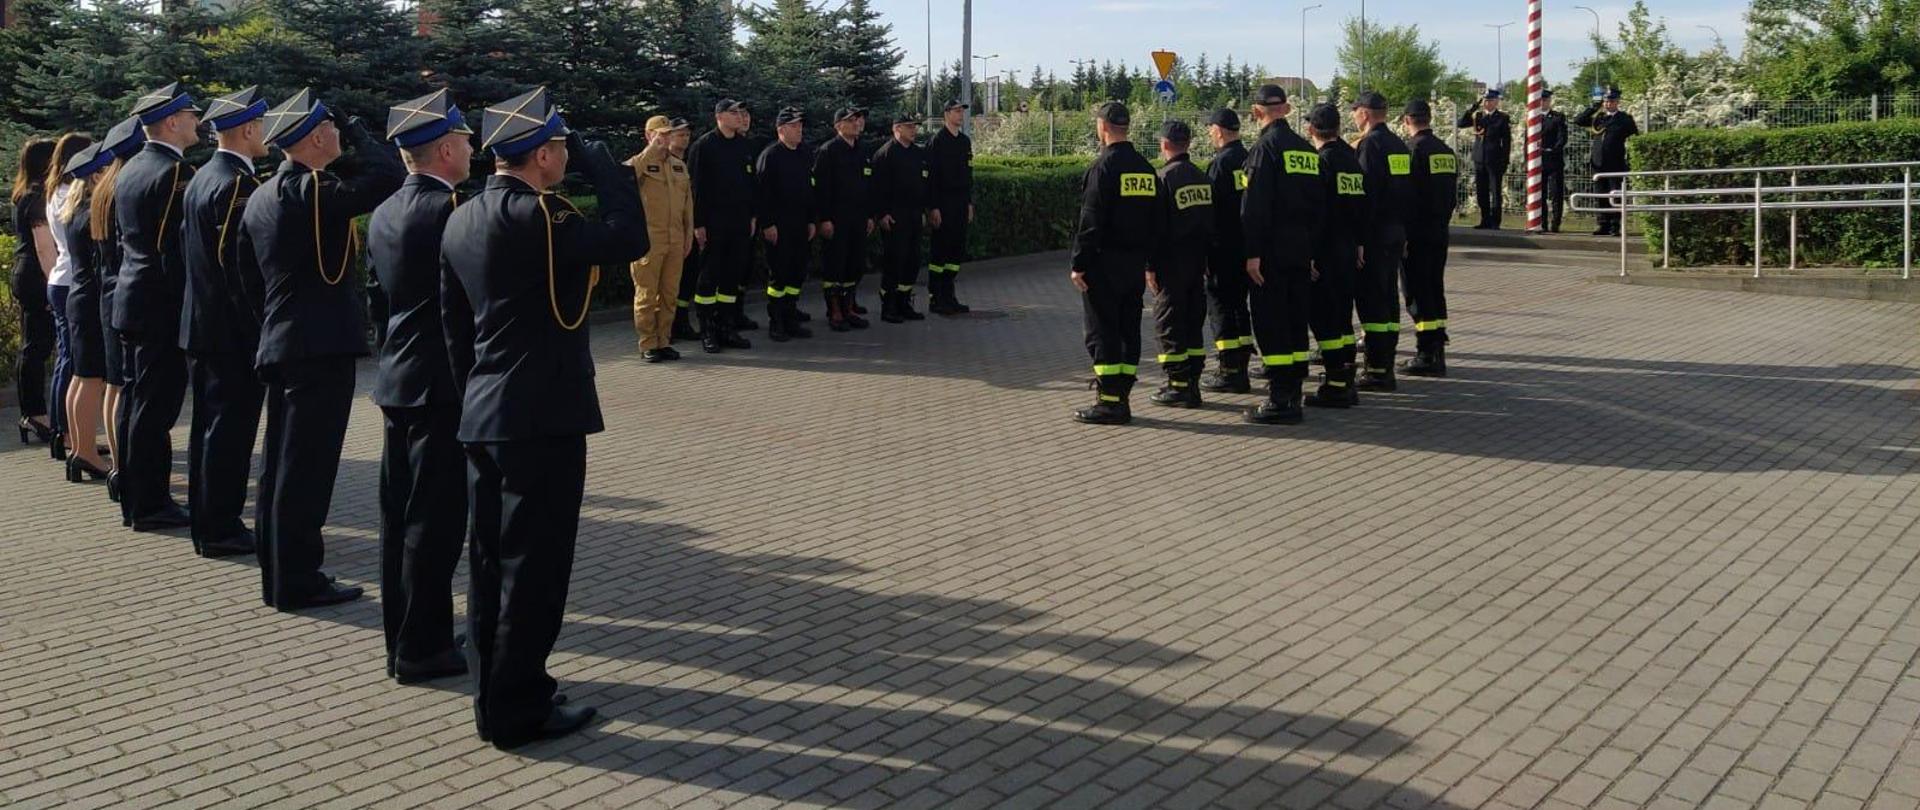 Zdjęcie przedstawia strażaków stojących na placu przed budynkiem komendy podczas uroczystej zbiórki z okazji Święta Flagi